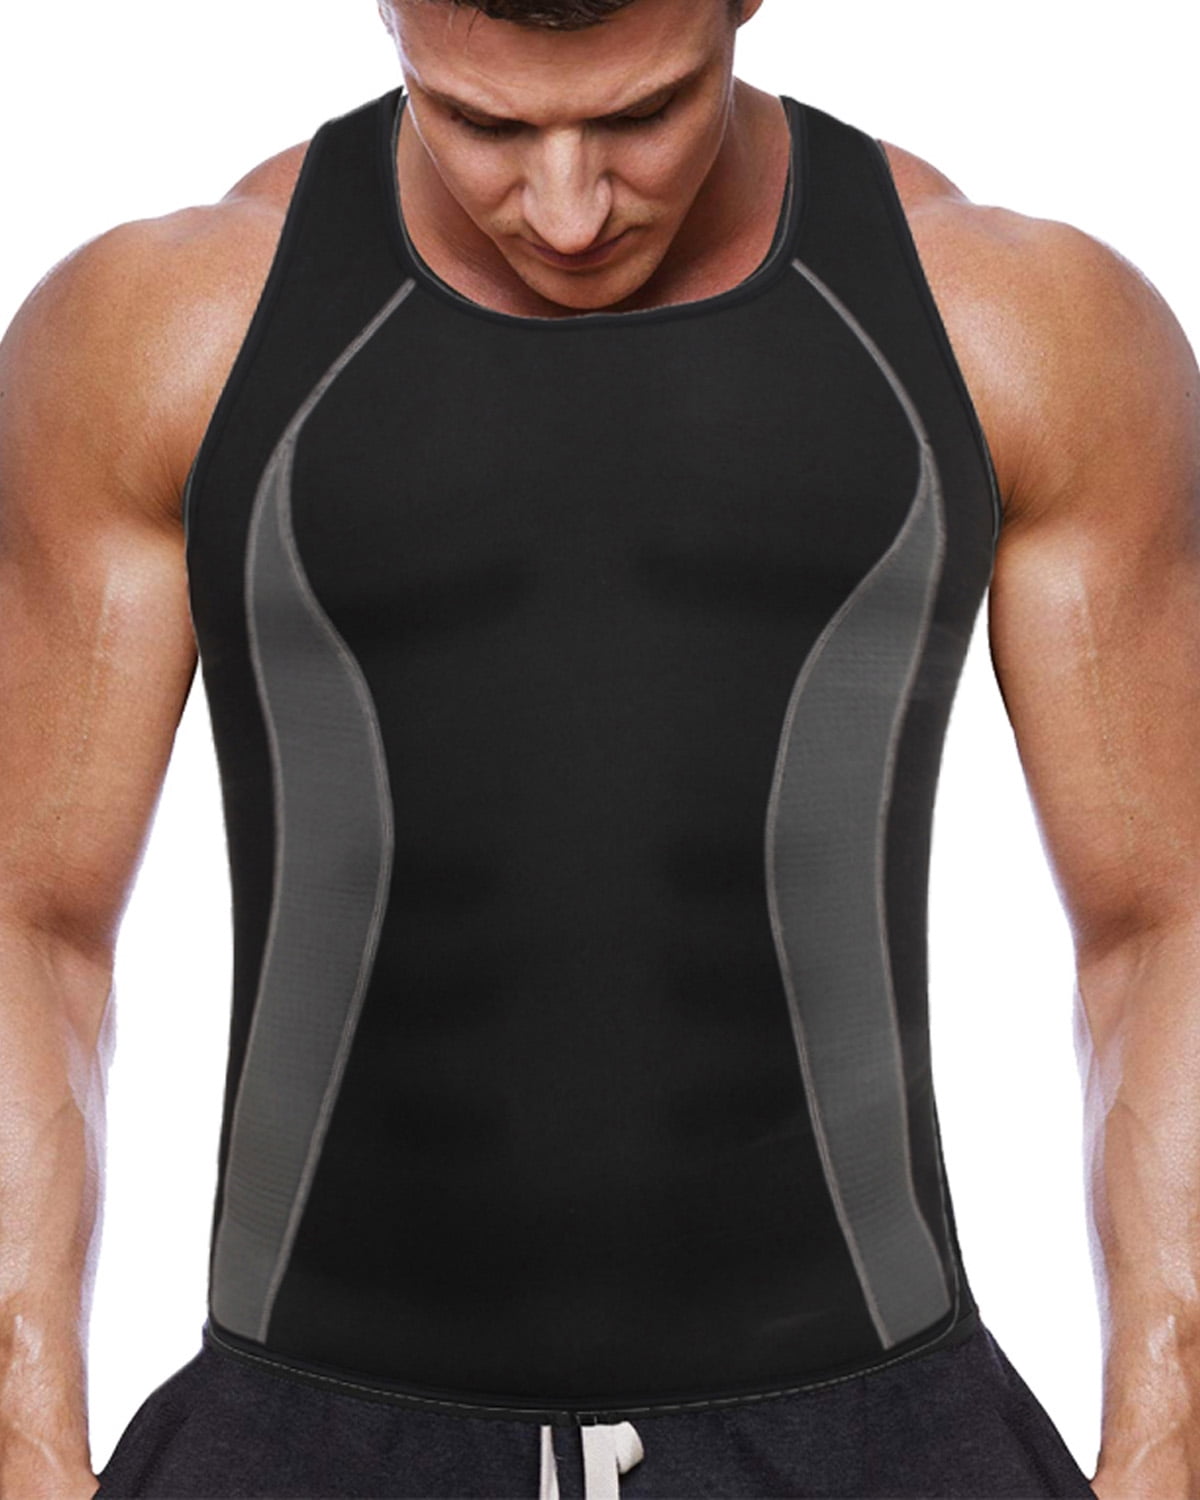 Sauna Vest for Men Waist Trainer Sauna Sweat Suit Zipper Body Shaper Tank Top US